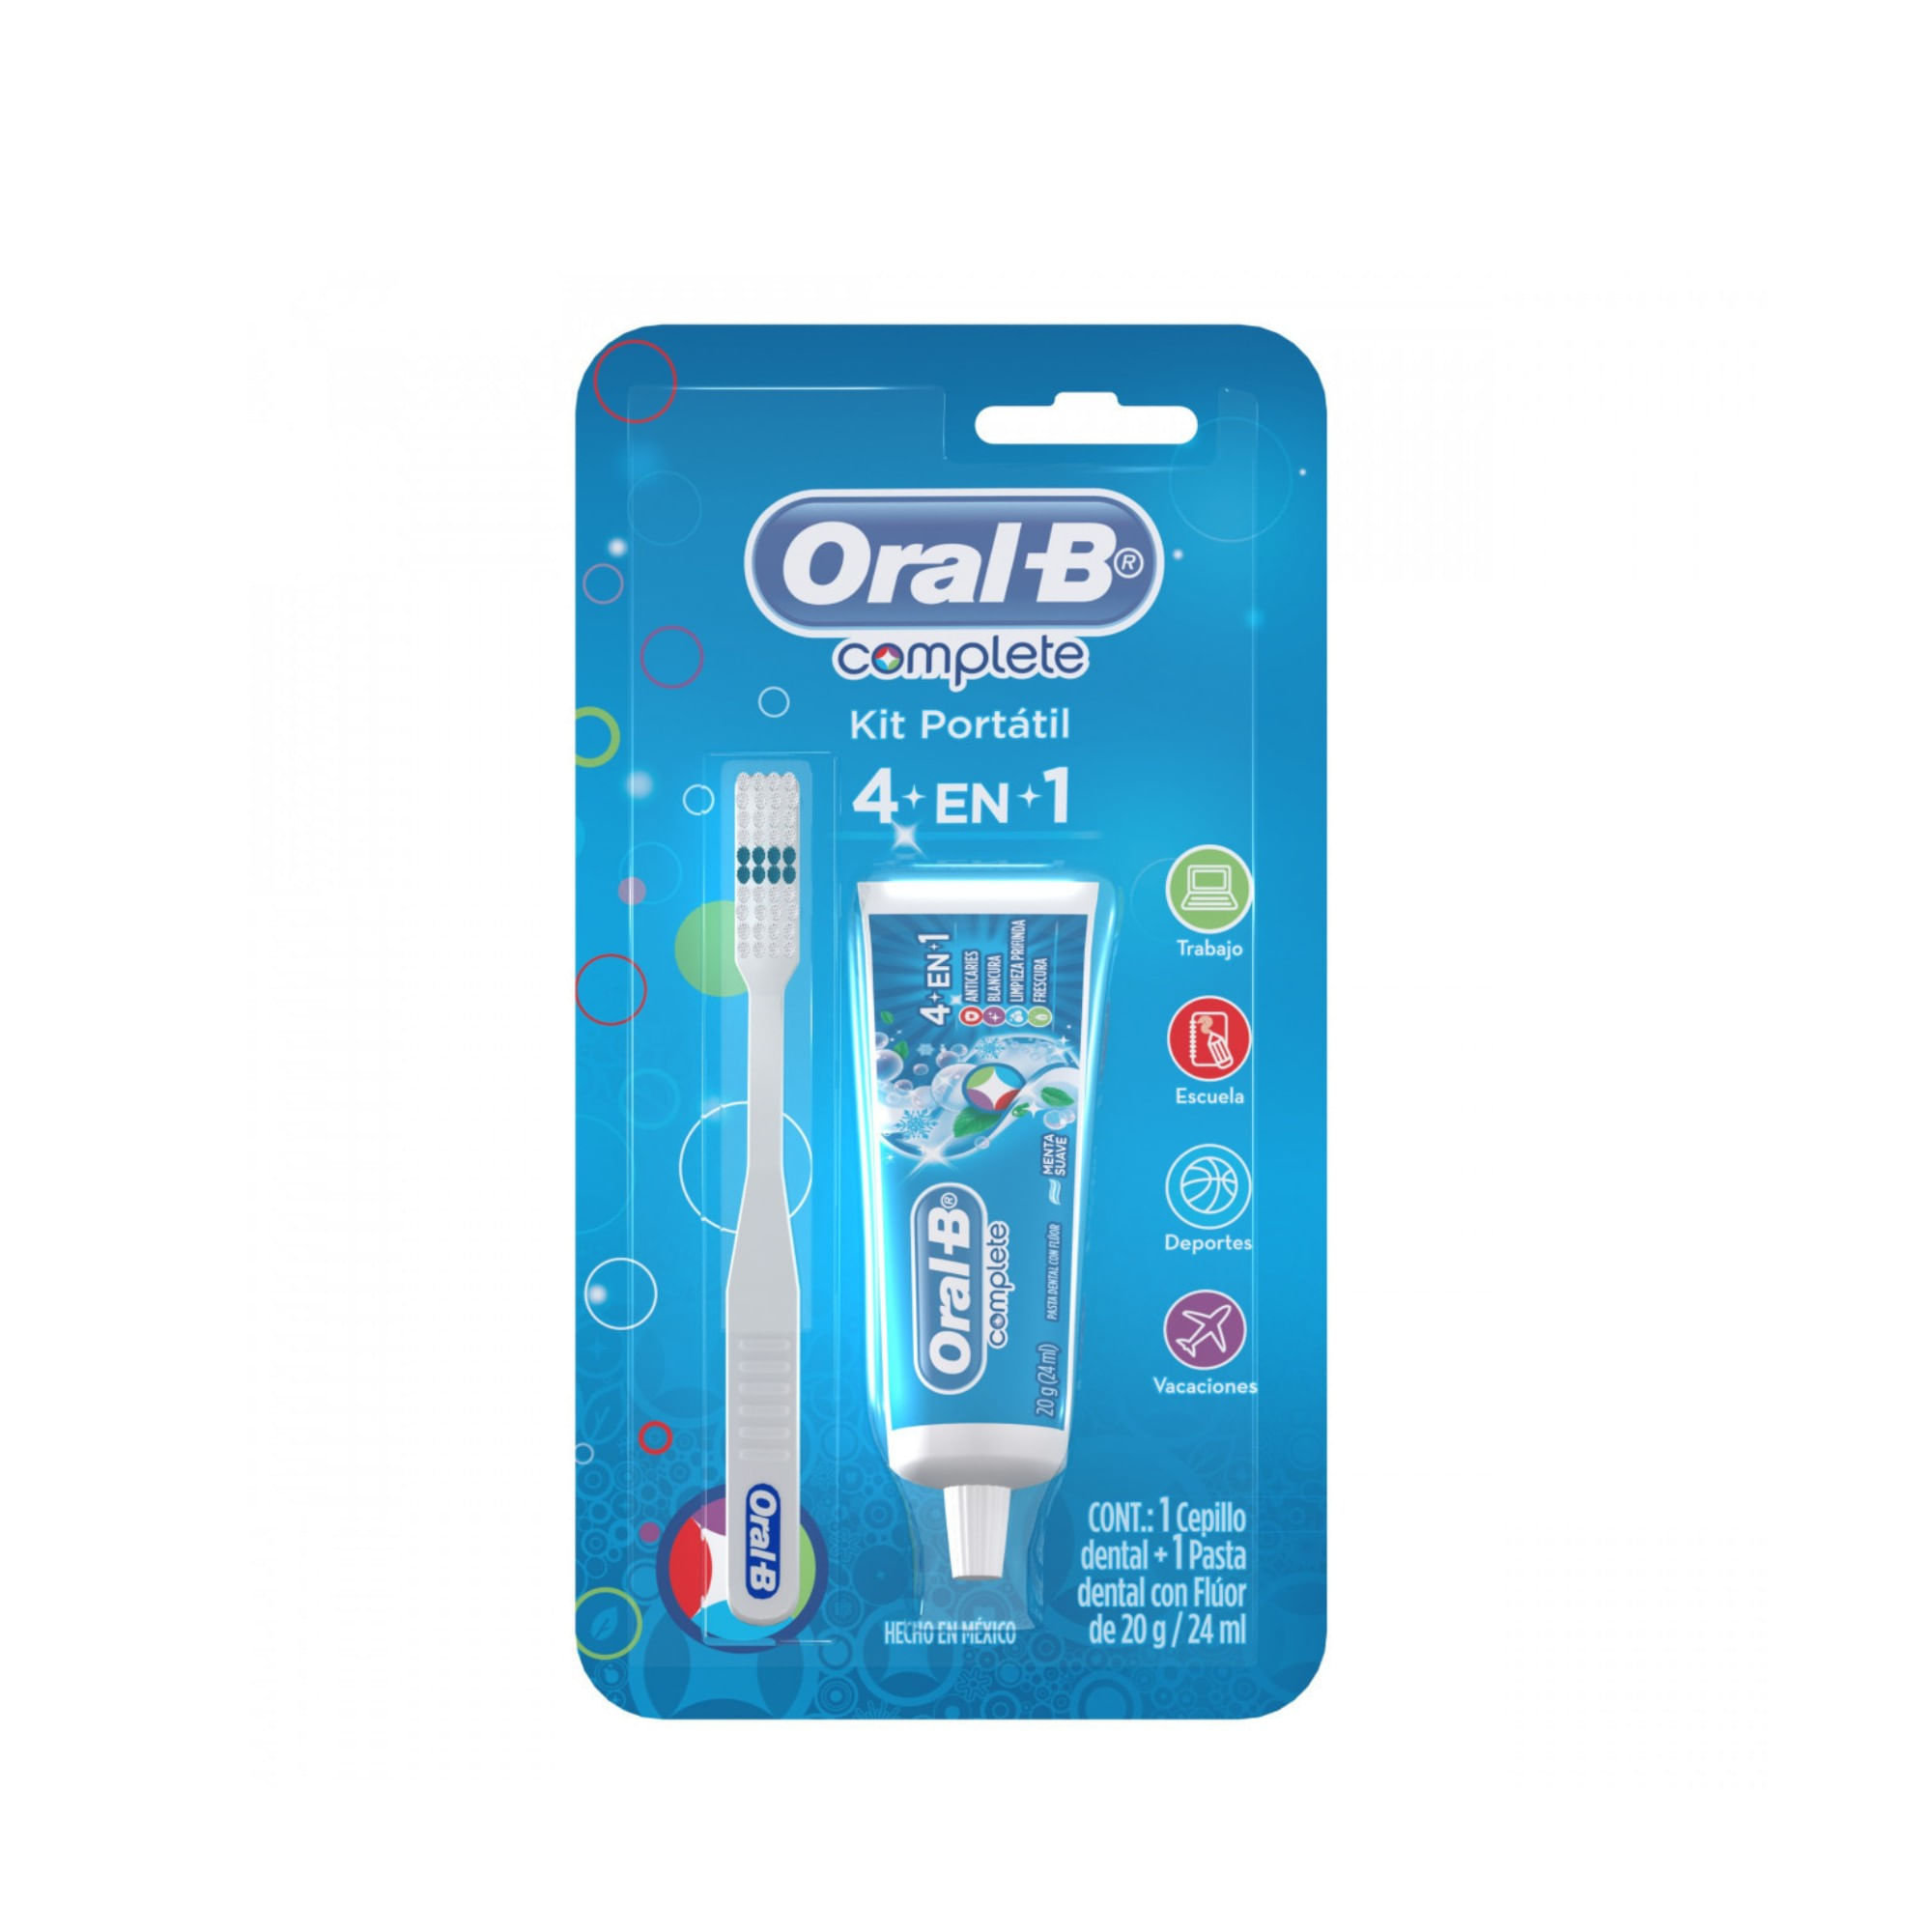 Oral-B ® Complete Kit Portátil - Kit de 1 cepillo dental + 1 pasta